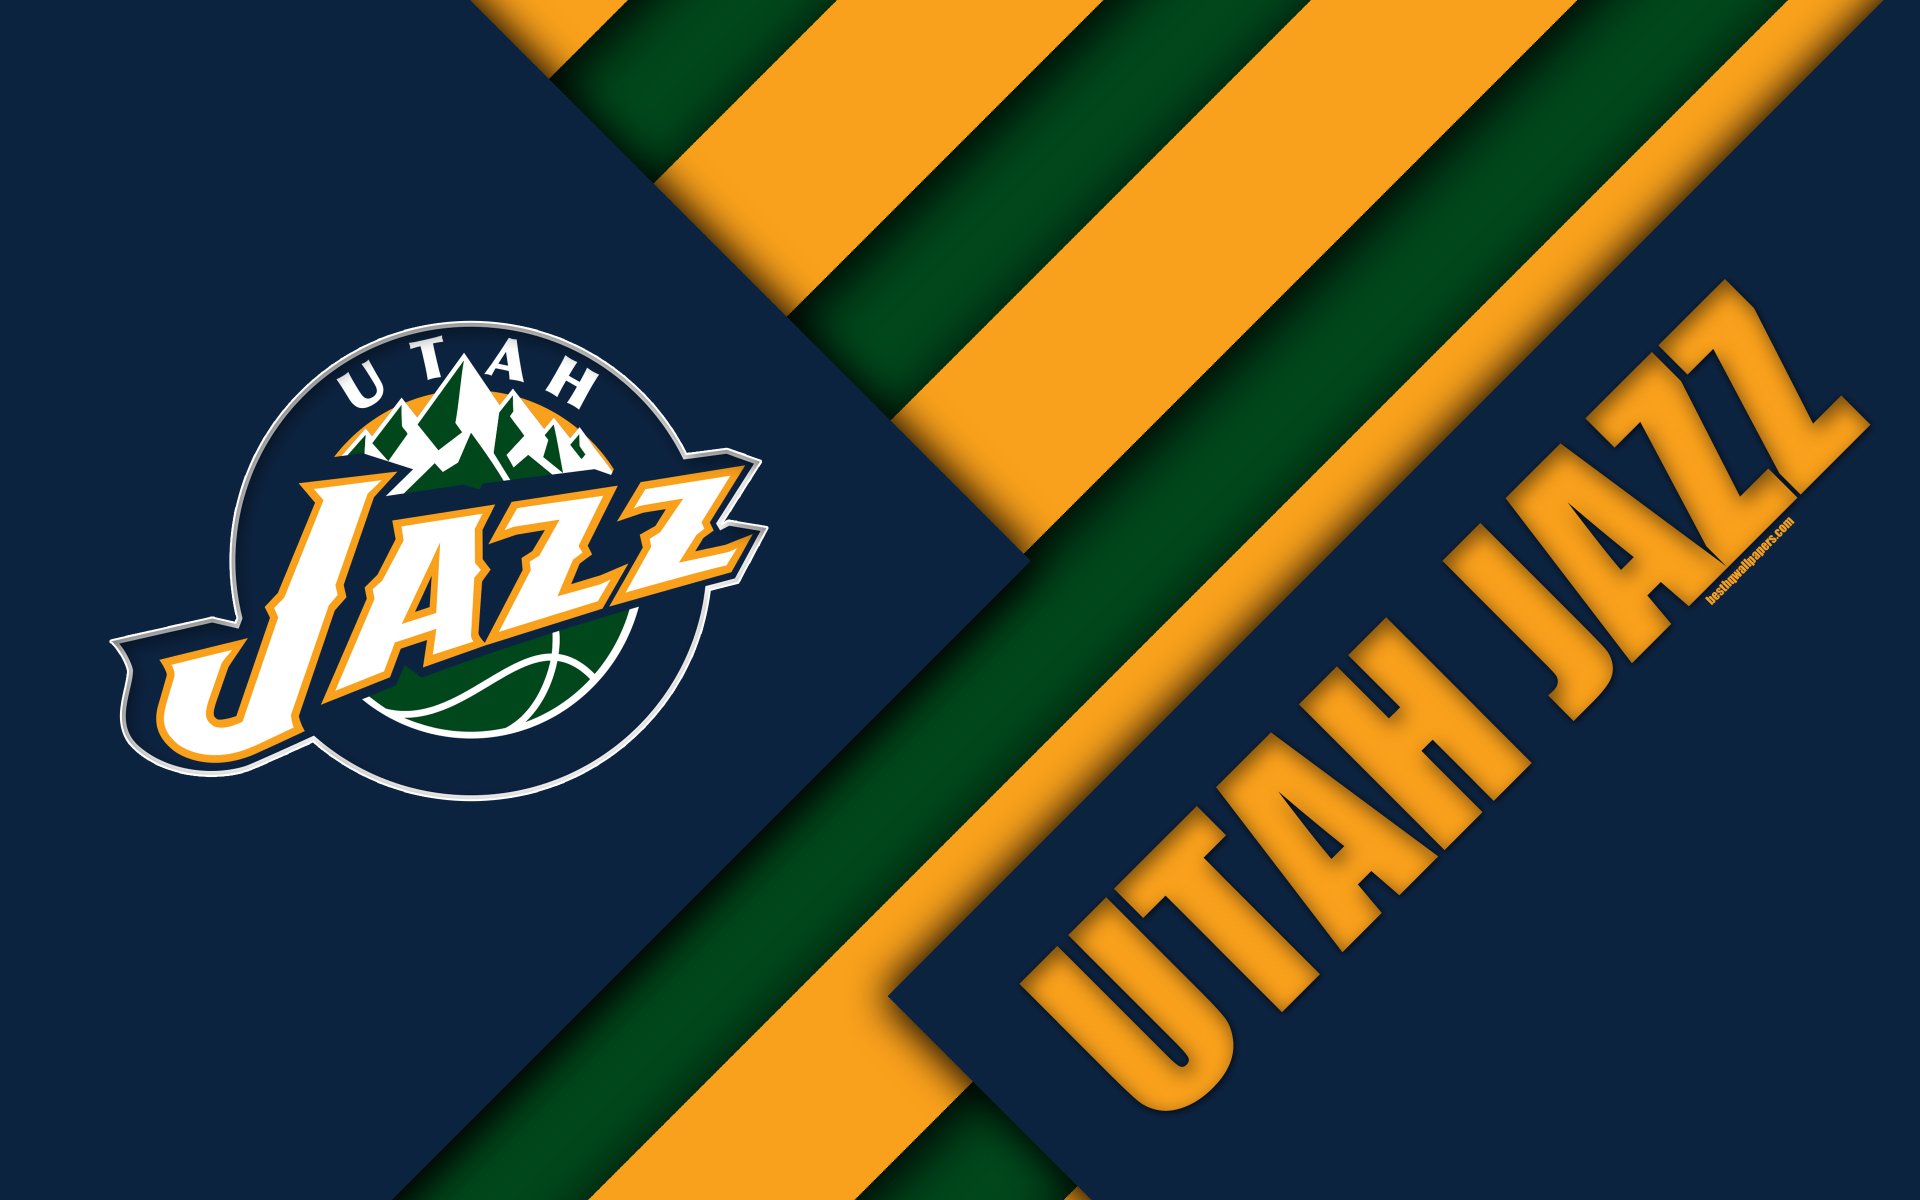 Utah Jazz Logo 4k Ultra HD Wallpaper | Background Image ...